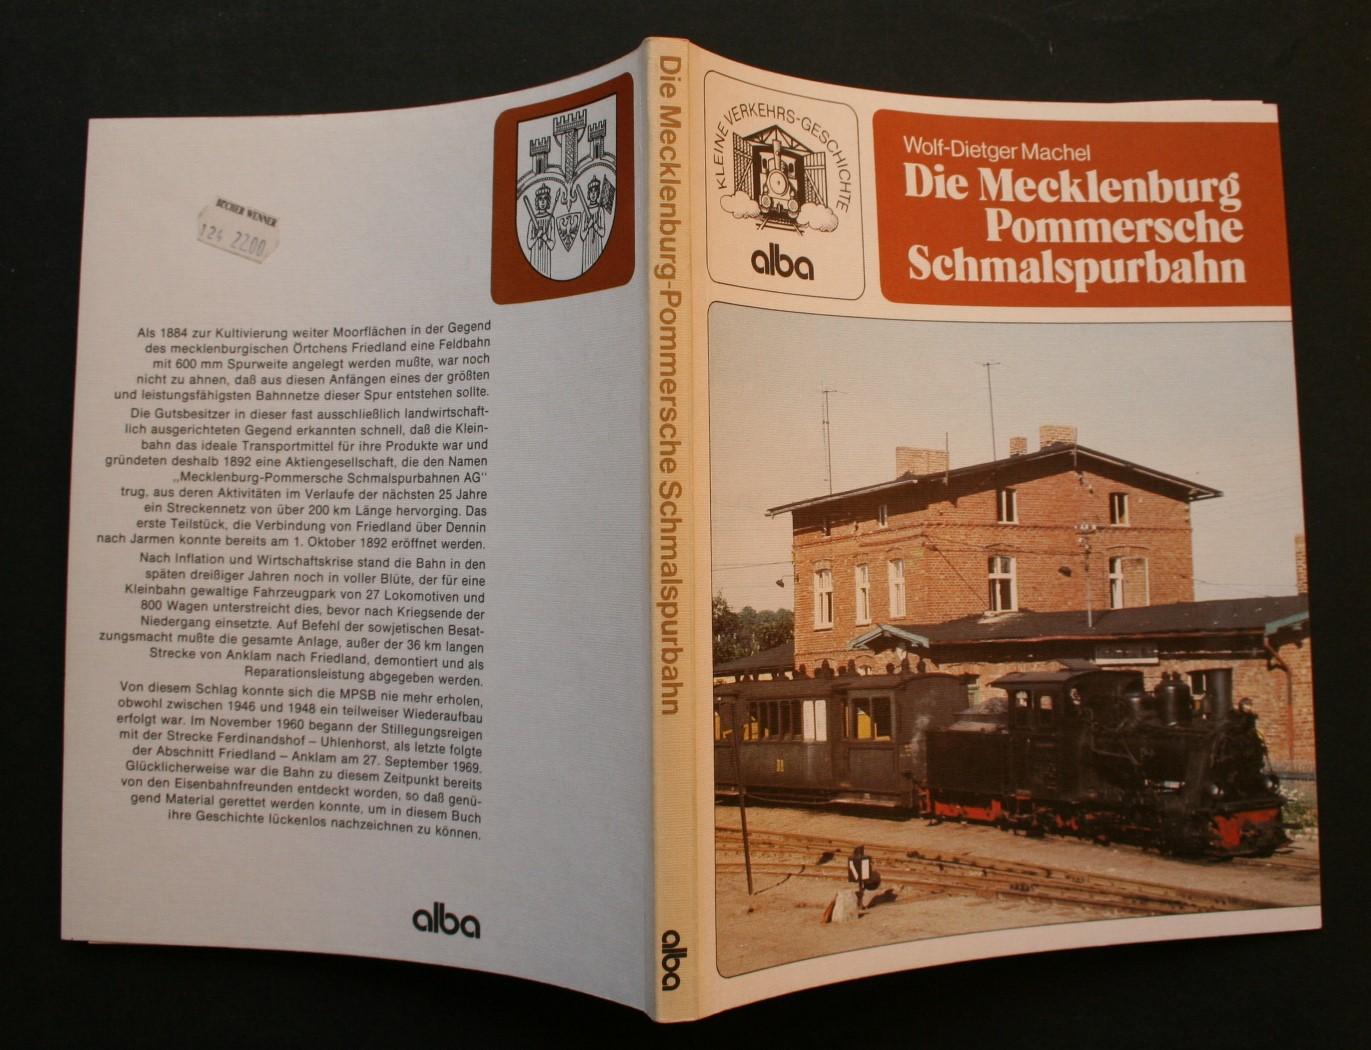 die-mecklenburg-pommersche-schmalspurbahn-aus-der-reihe-kleine-verkehrs-geschichte